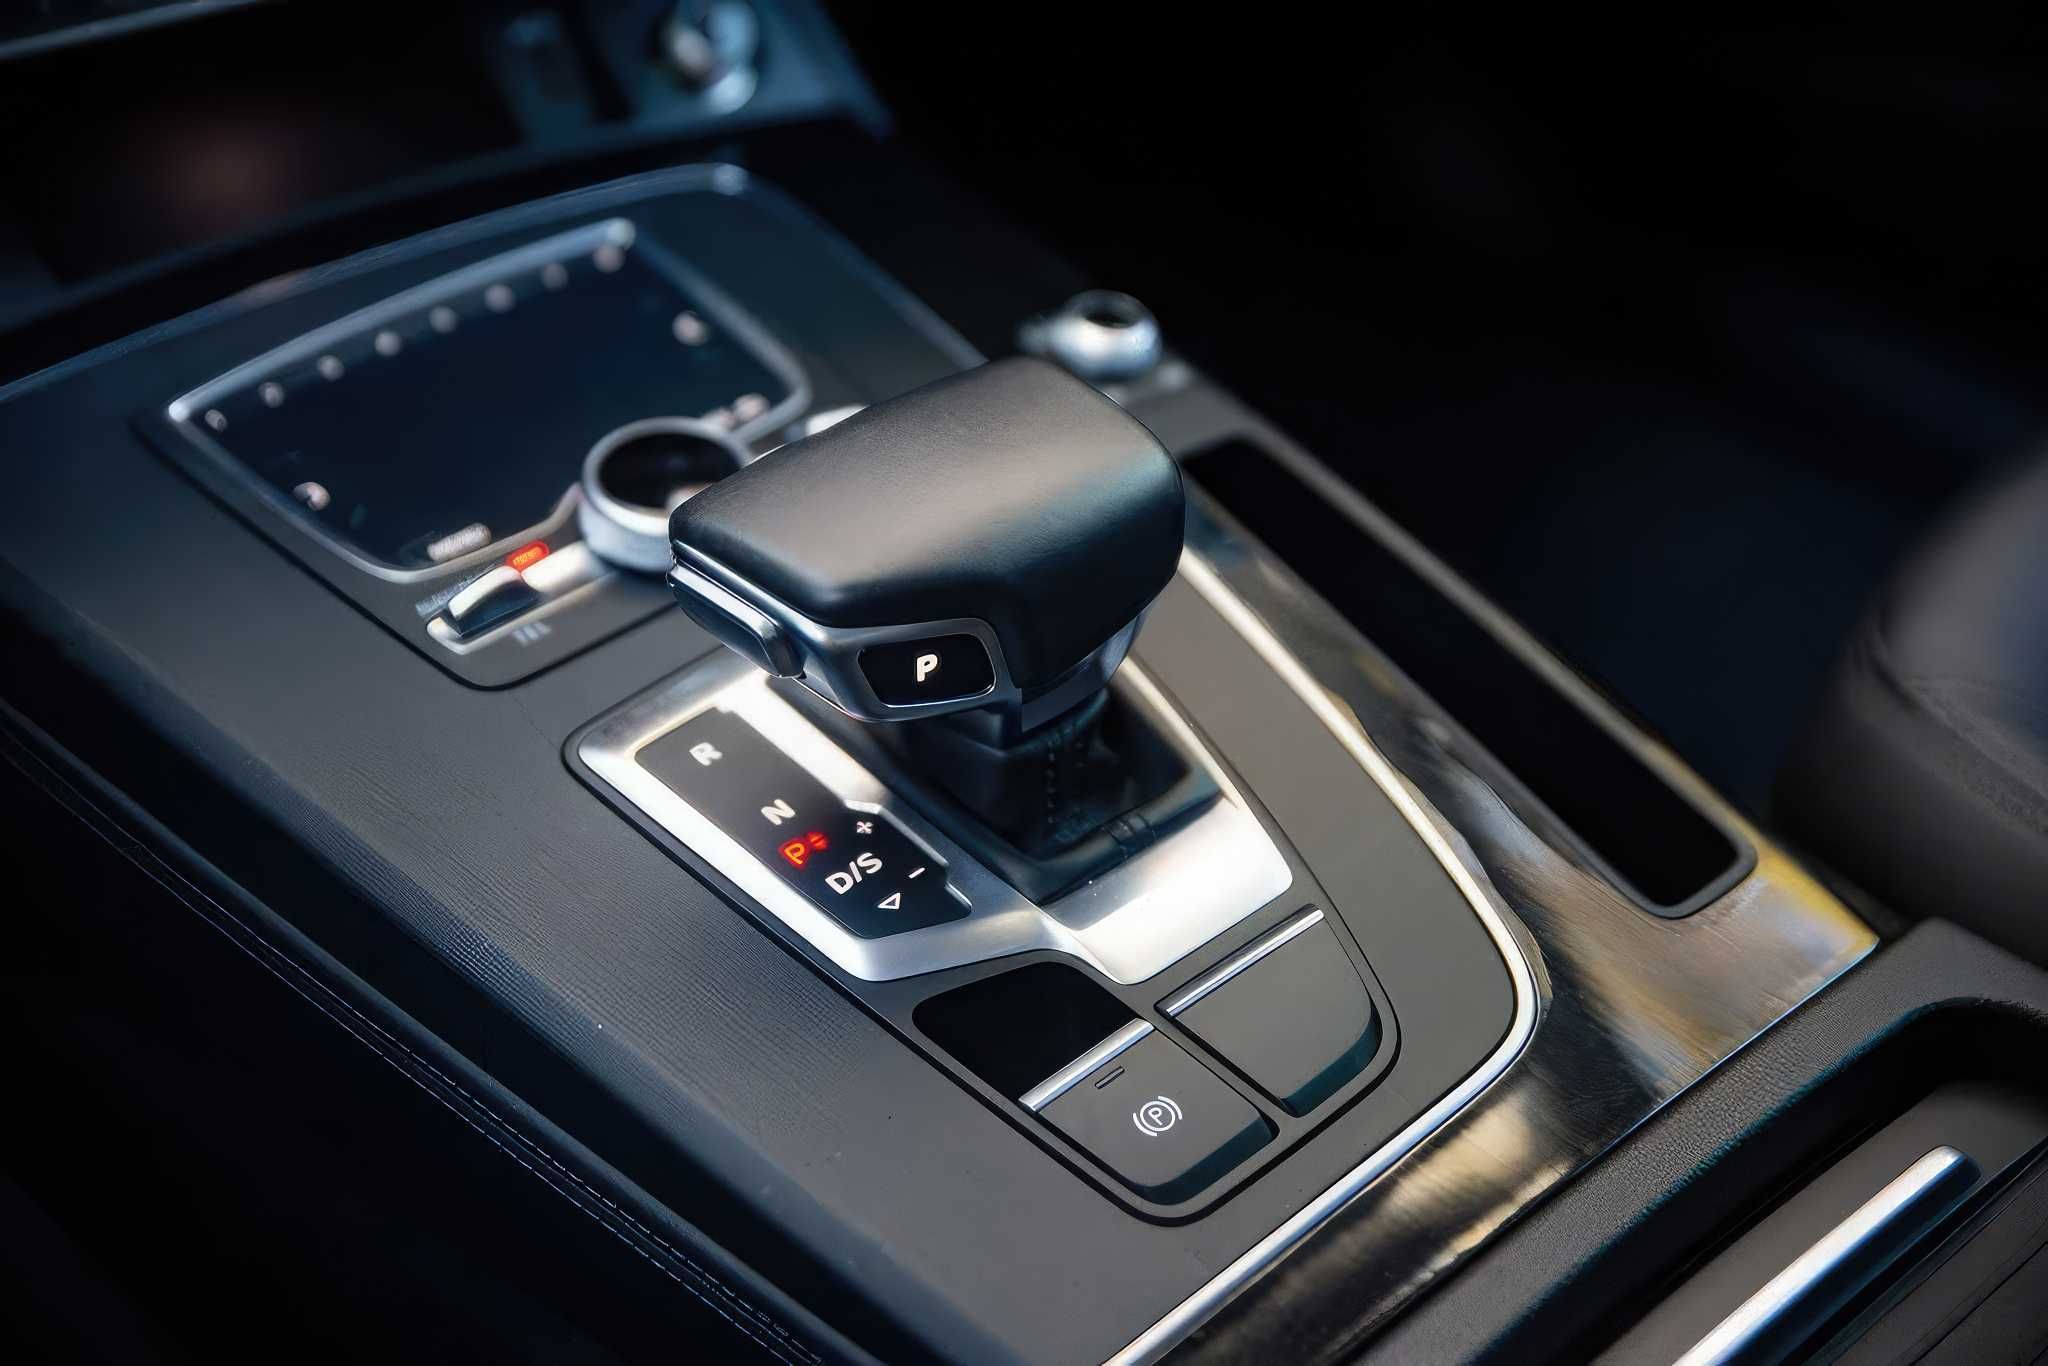 2020 Audi Q5 quattro Premium Plus 45 TFSI